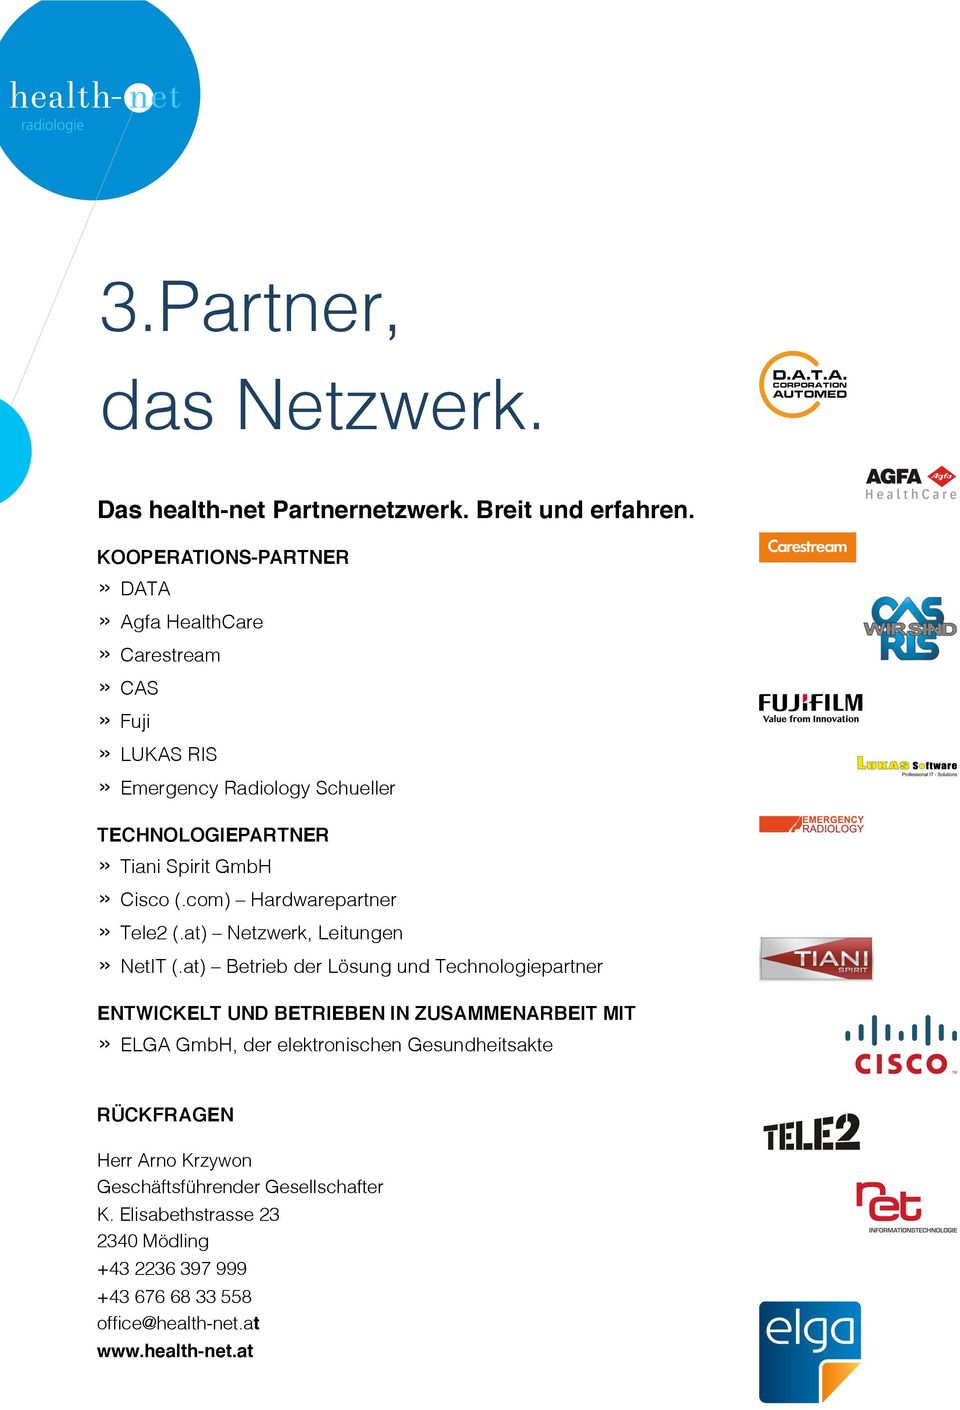 » Tiani Spirit GmbH» Cisco (.com) Hardwarepartner» Tele2 (.at) Netzwerk, Leitungen!» NetIT (.at) Betrieb der Lösung und Technologiepartner!